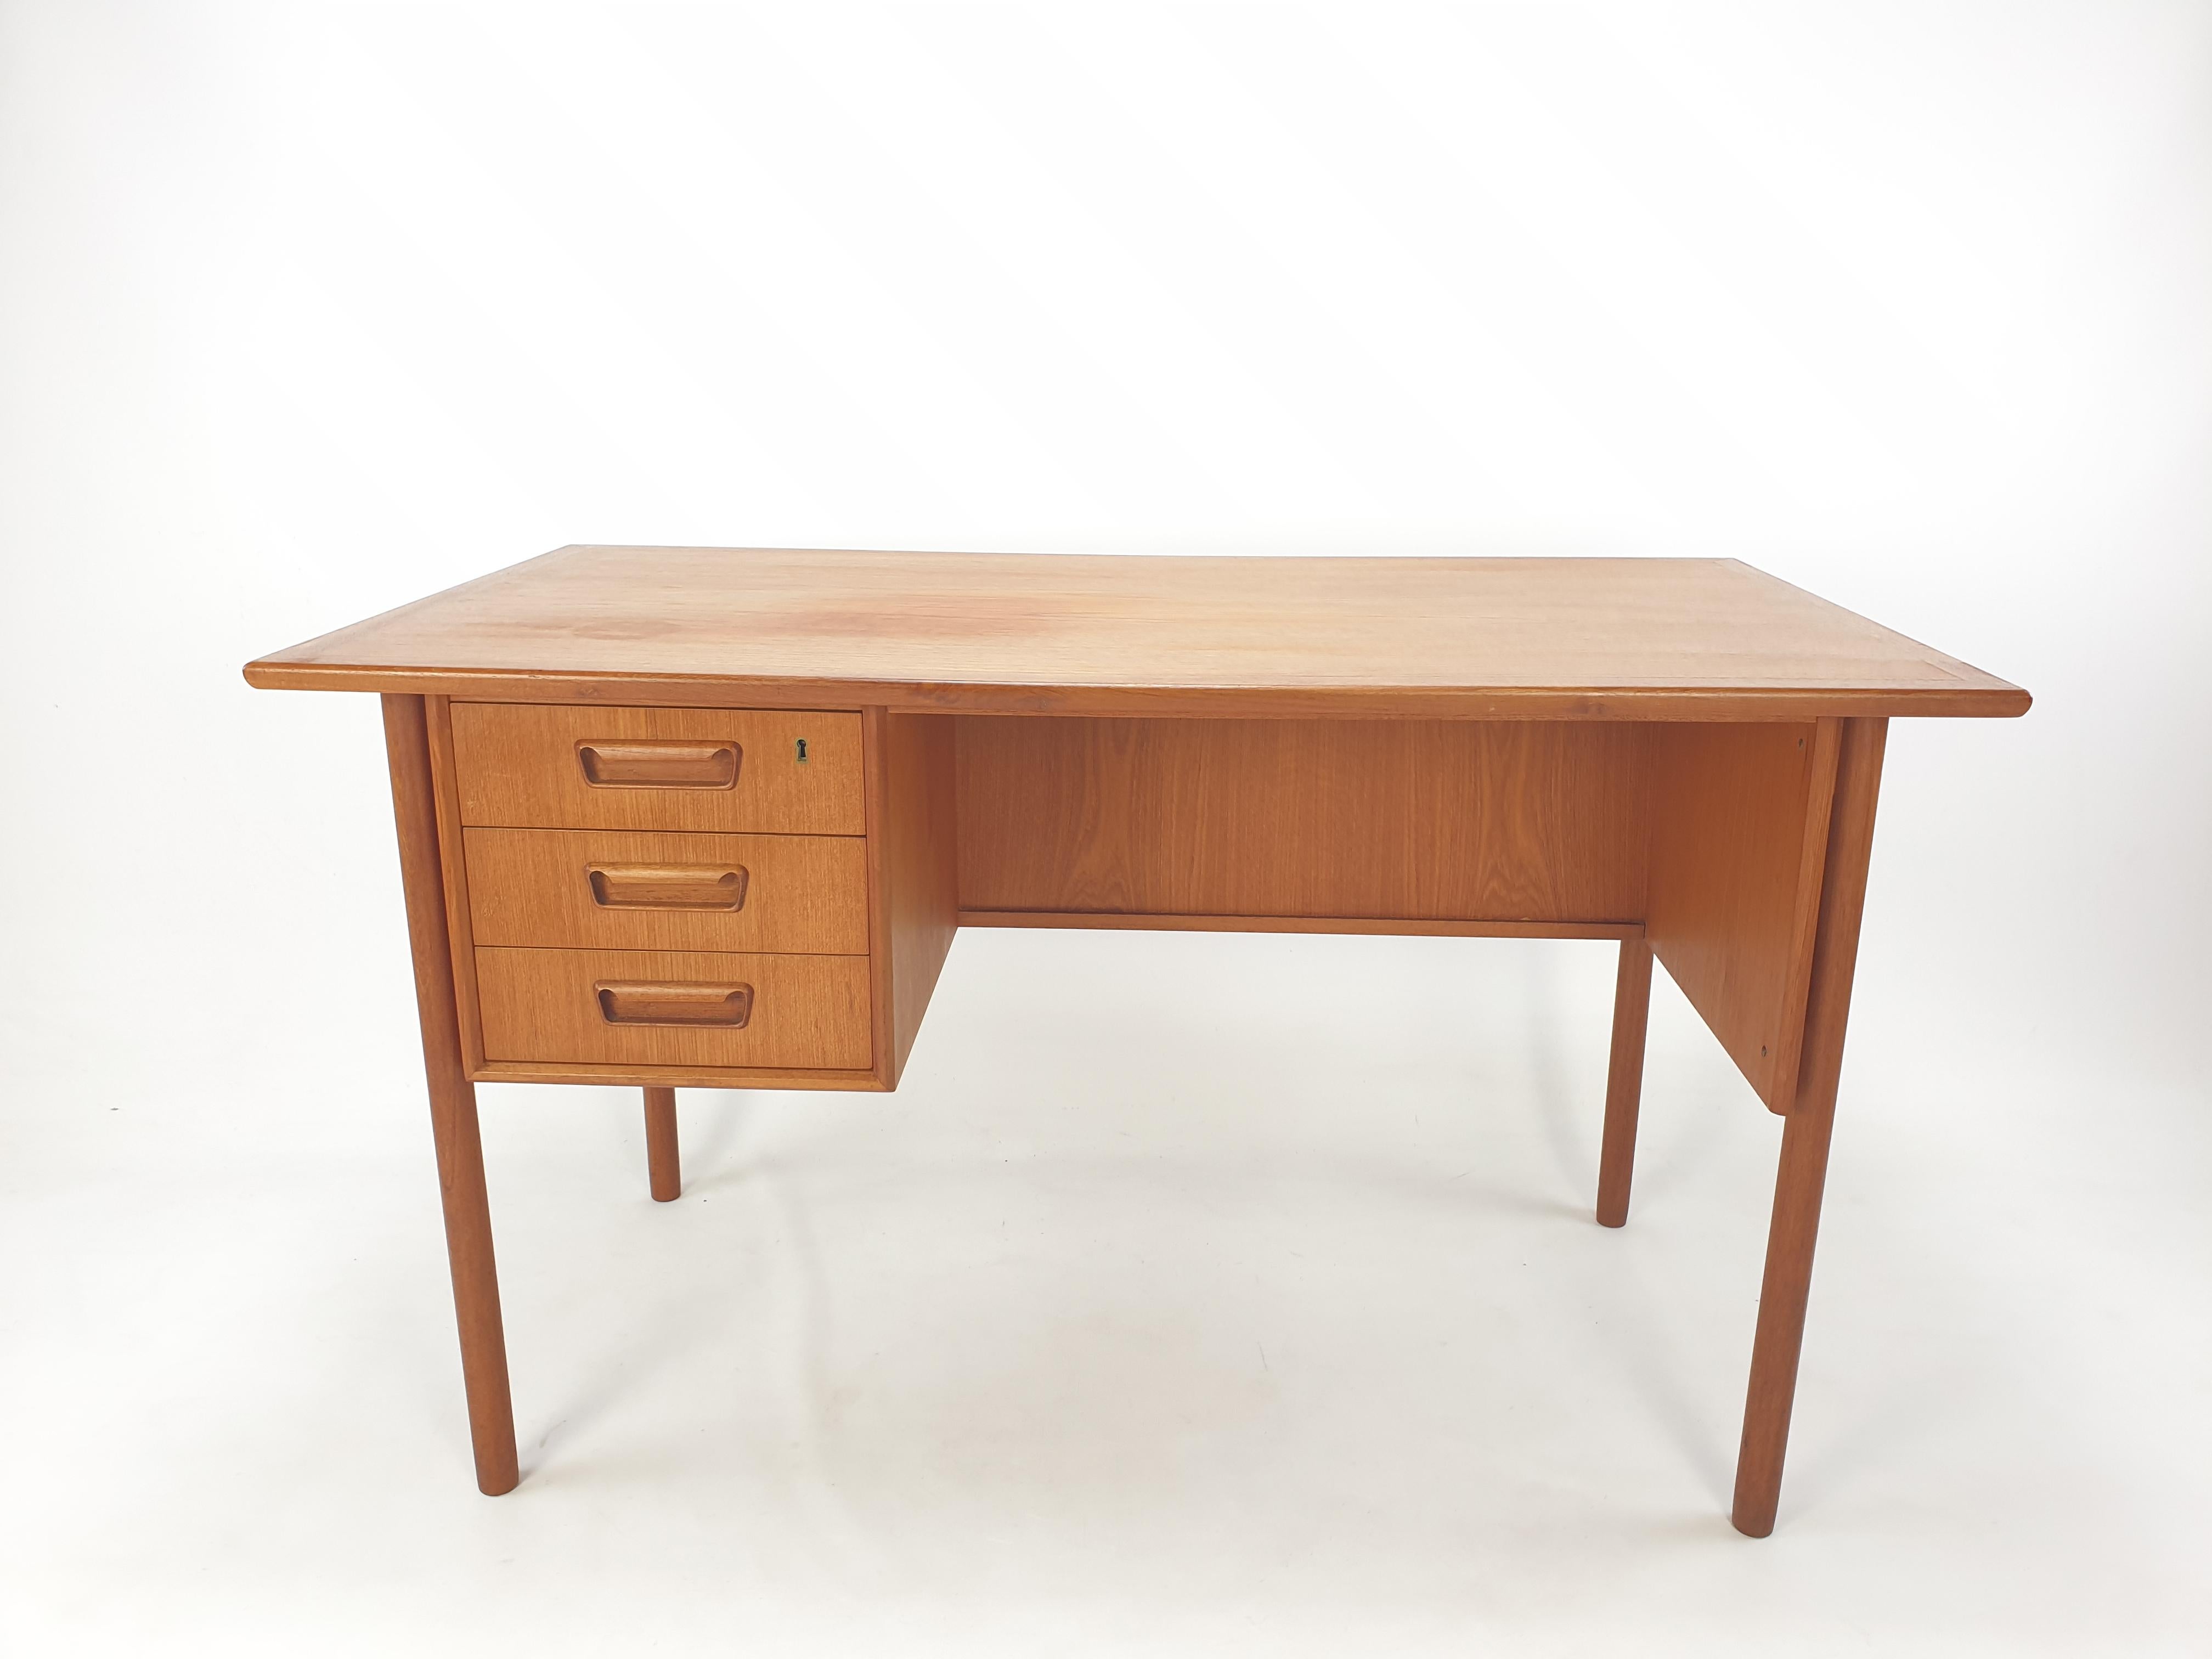 Sehr schöner Schreibtisch, entworfen von G. Nielsen Tibergaard, hergestellt in Dänemark in den 1960er Jahren. 

Der Schreibtisch ist aus Teakholz gefertigt und steht dank der fertigen Rückseite mit offenem Stauraum für Bücher oder andere